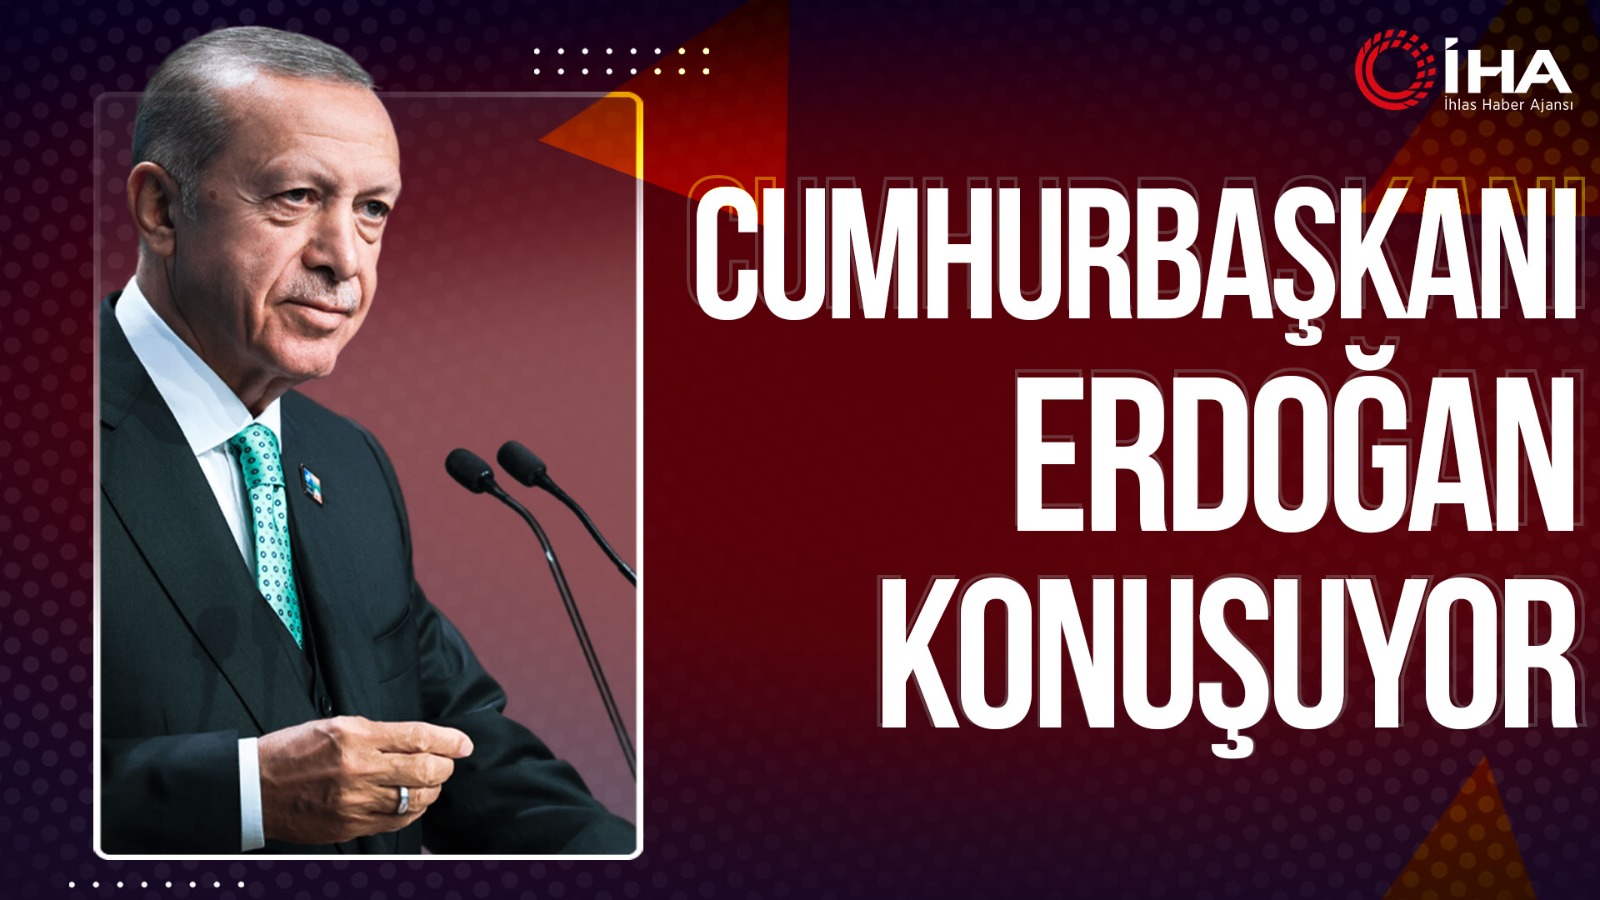 Cumhurbaşkanı Erdoğan'dan 'değişim' mesajı: 